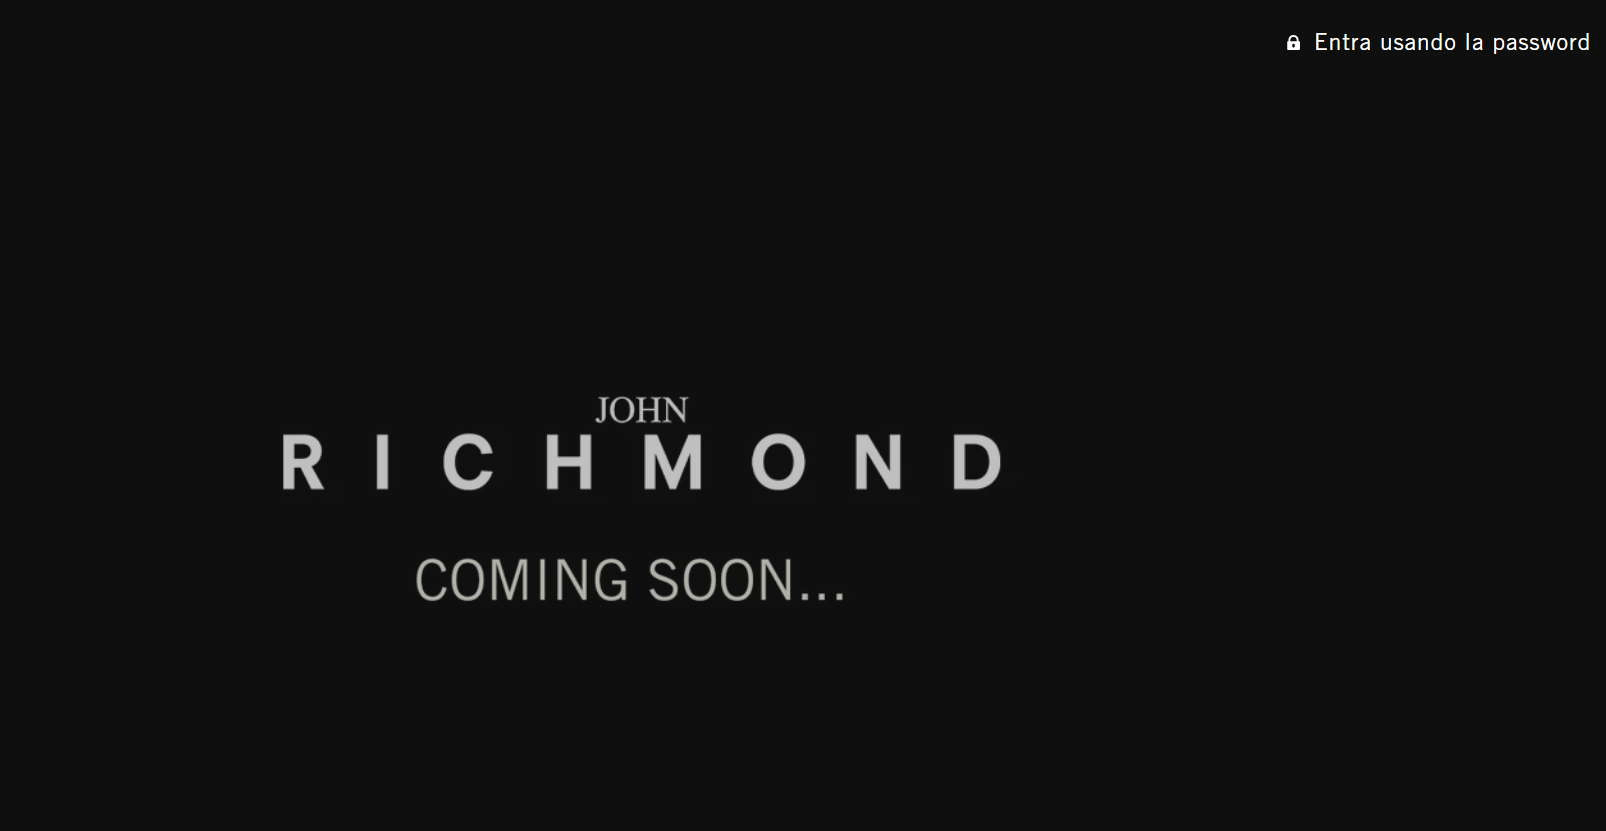 John Richmond官网-johnrichmond英国设计师服装服饰品牌 前卫、街头、高贵的风格